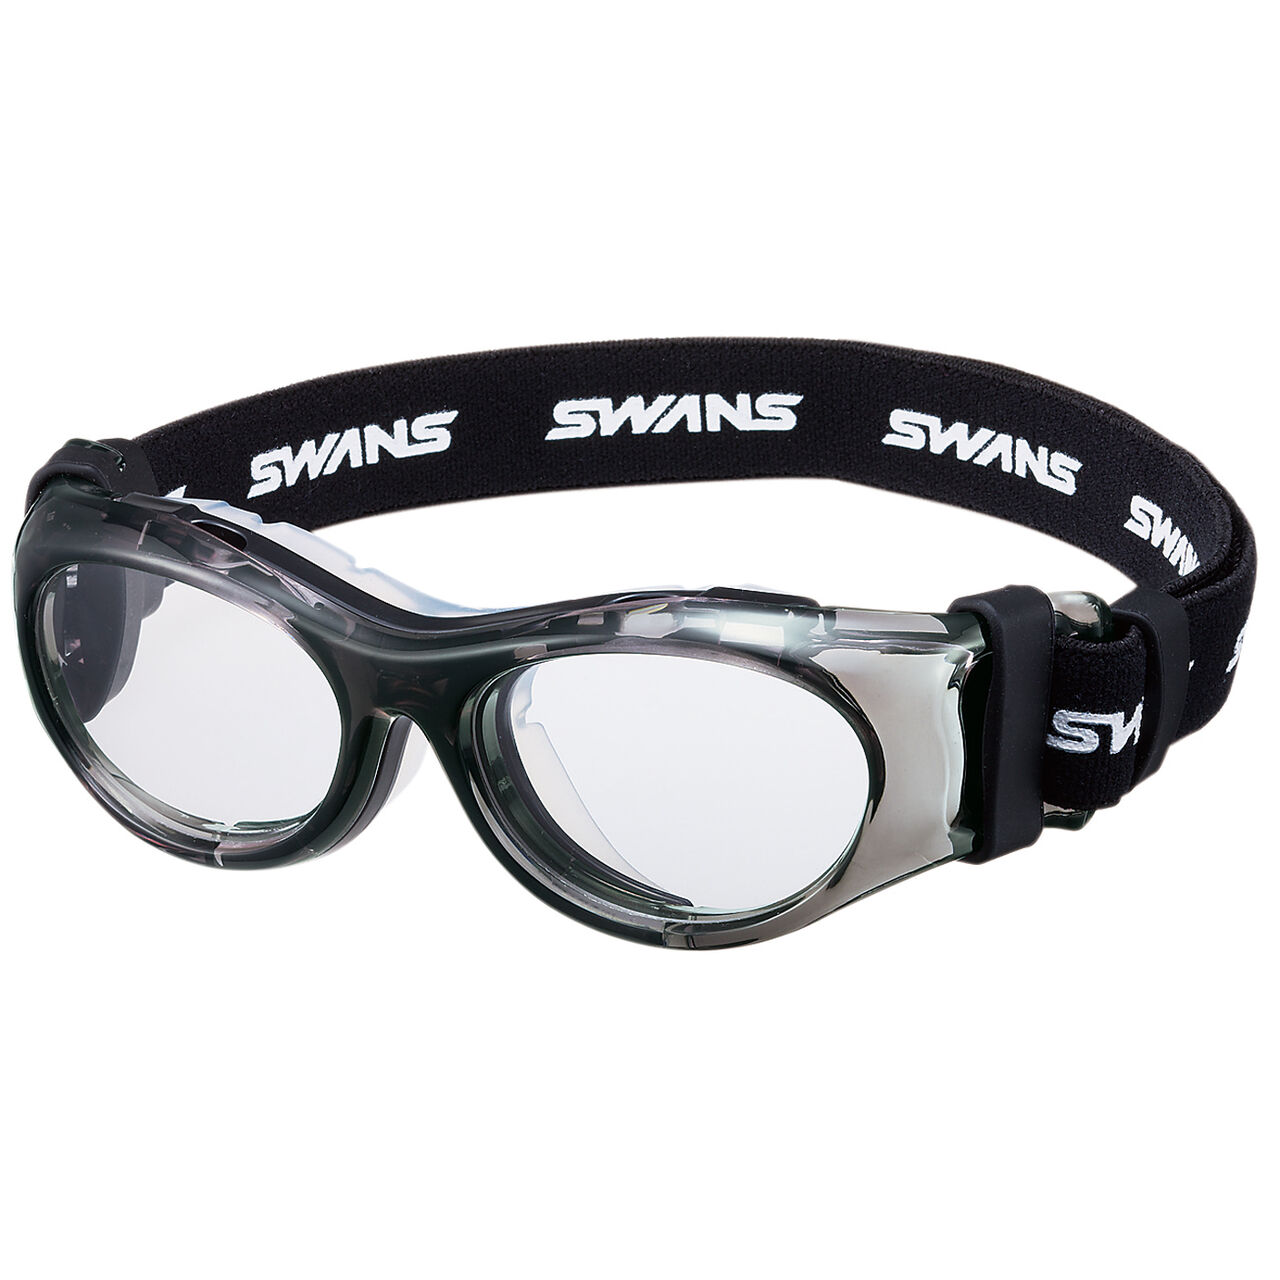 SWANS (速安视) SVS-700N CLSM 透明烟雾色 运动护目镜,Opt2, large image number 0